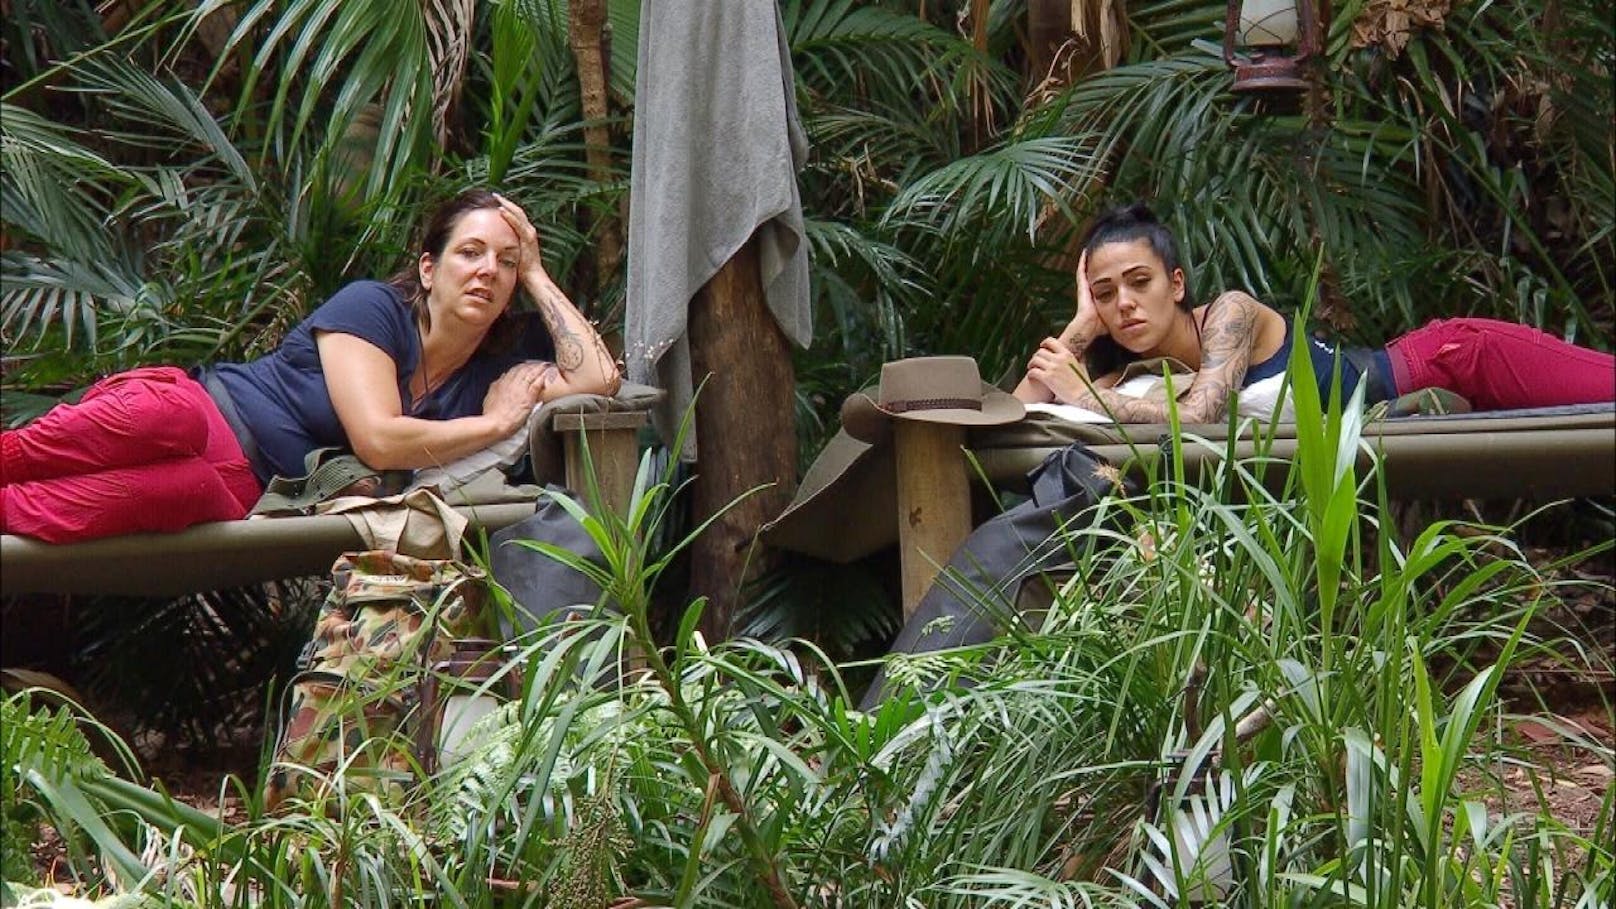 Tag 2 im Camp. Danni Büchner (l.) und Elena Miras müssen zur Dschungelprüfung "Grauen Under" antreten.  